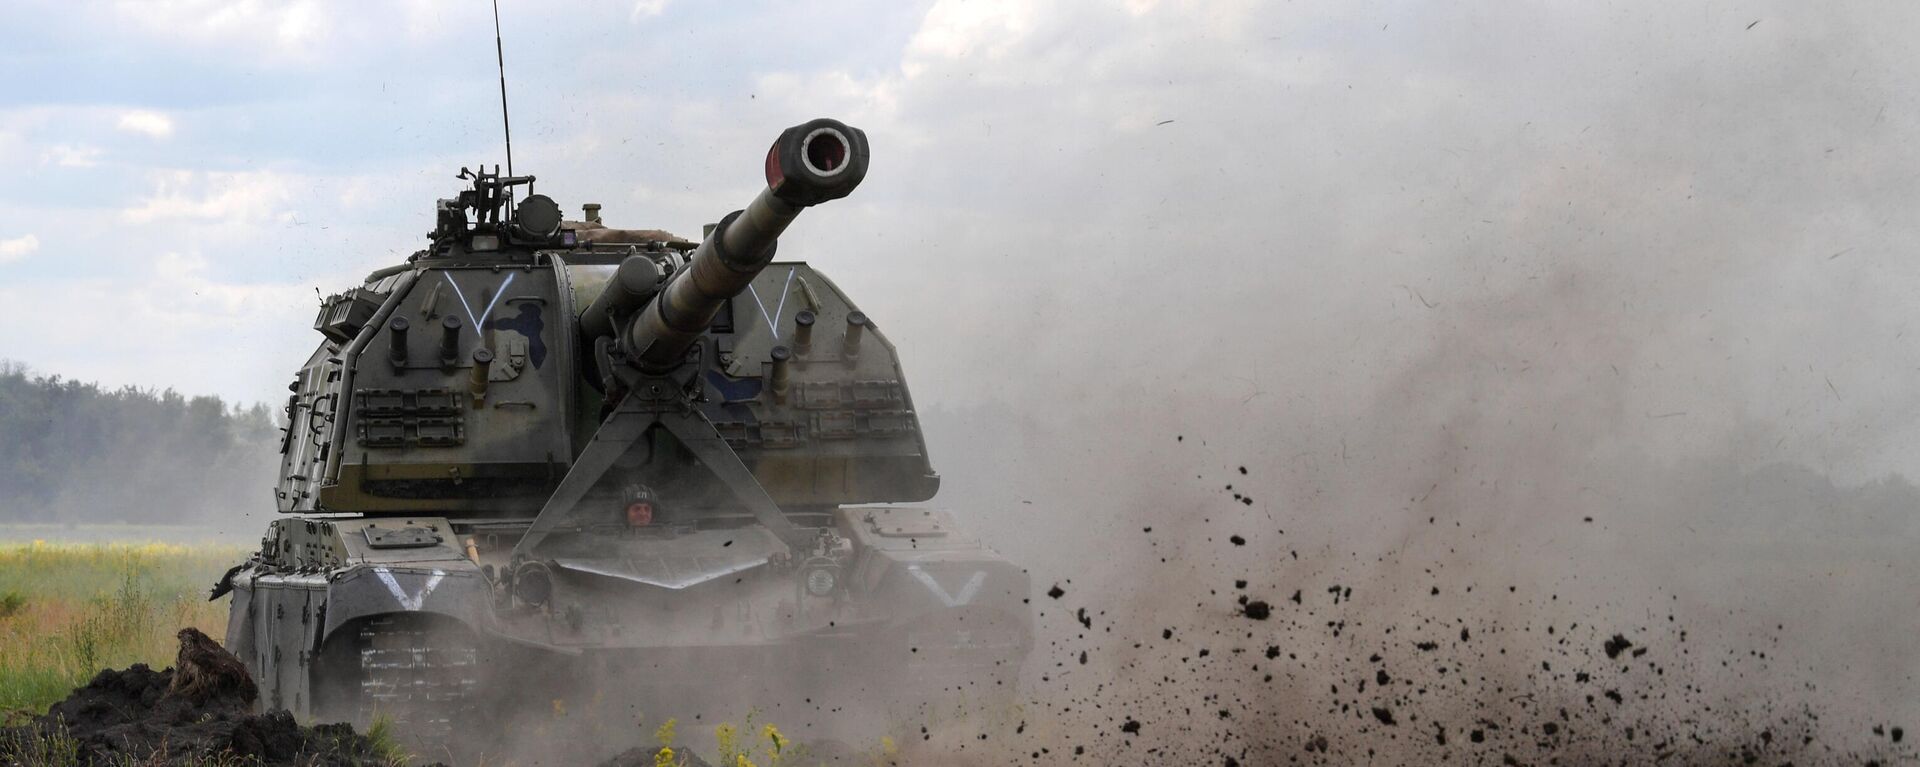 Tanque de artilharia autopropulsado Msta-S na zona da operação especial russa na Ucrânia - Sputnik Brasil, 1920, 04.07.2022